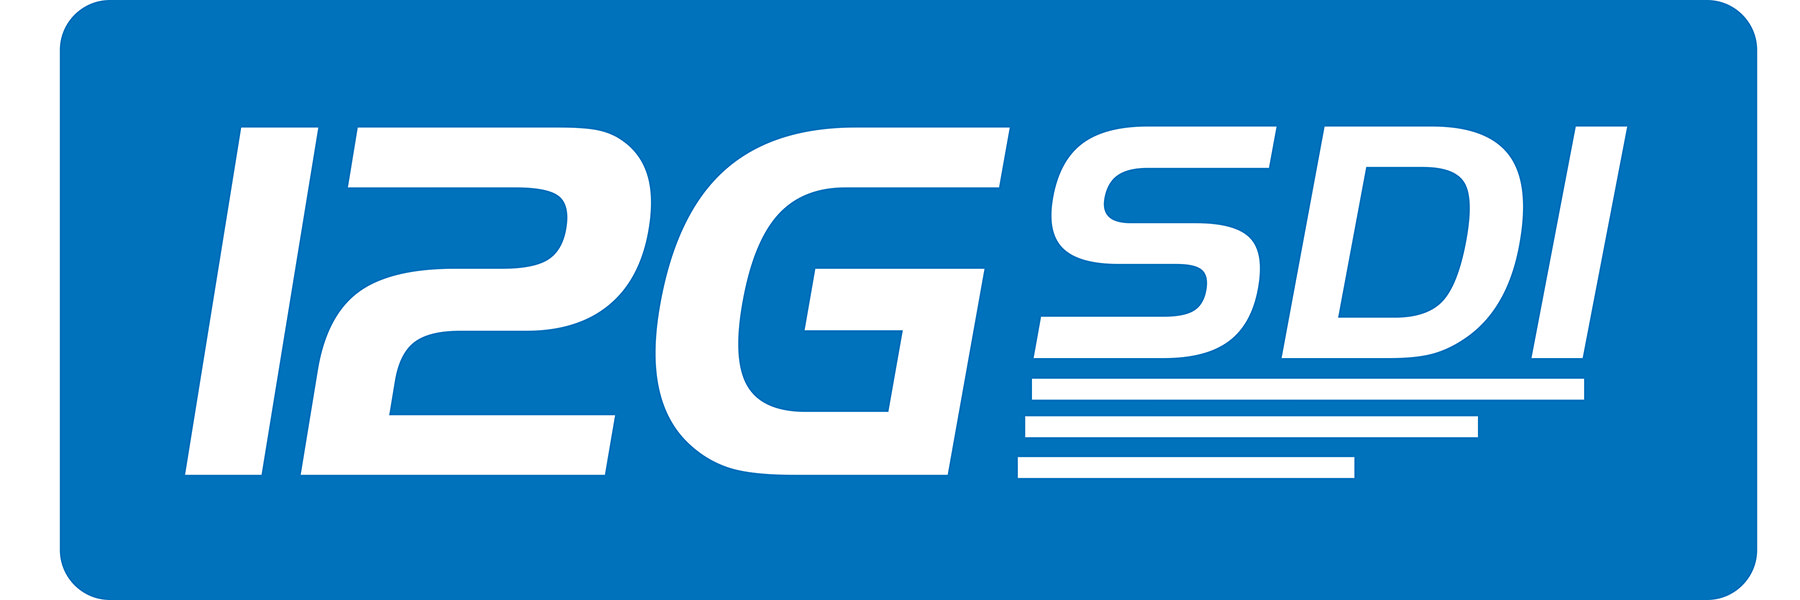 12G-SDIロゴ